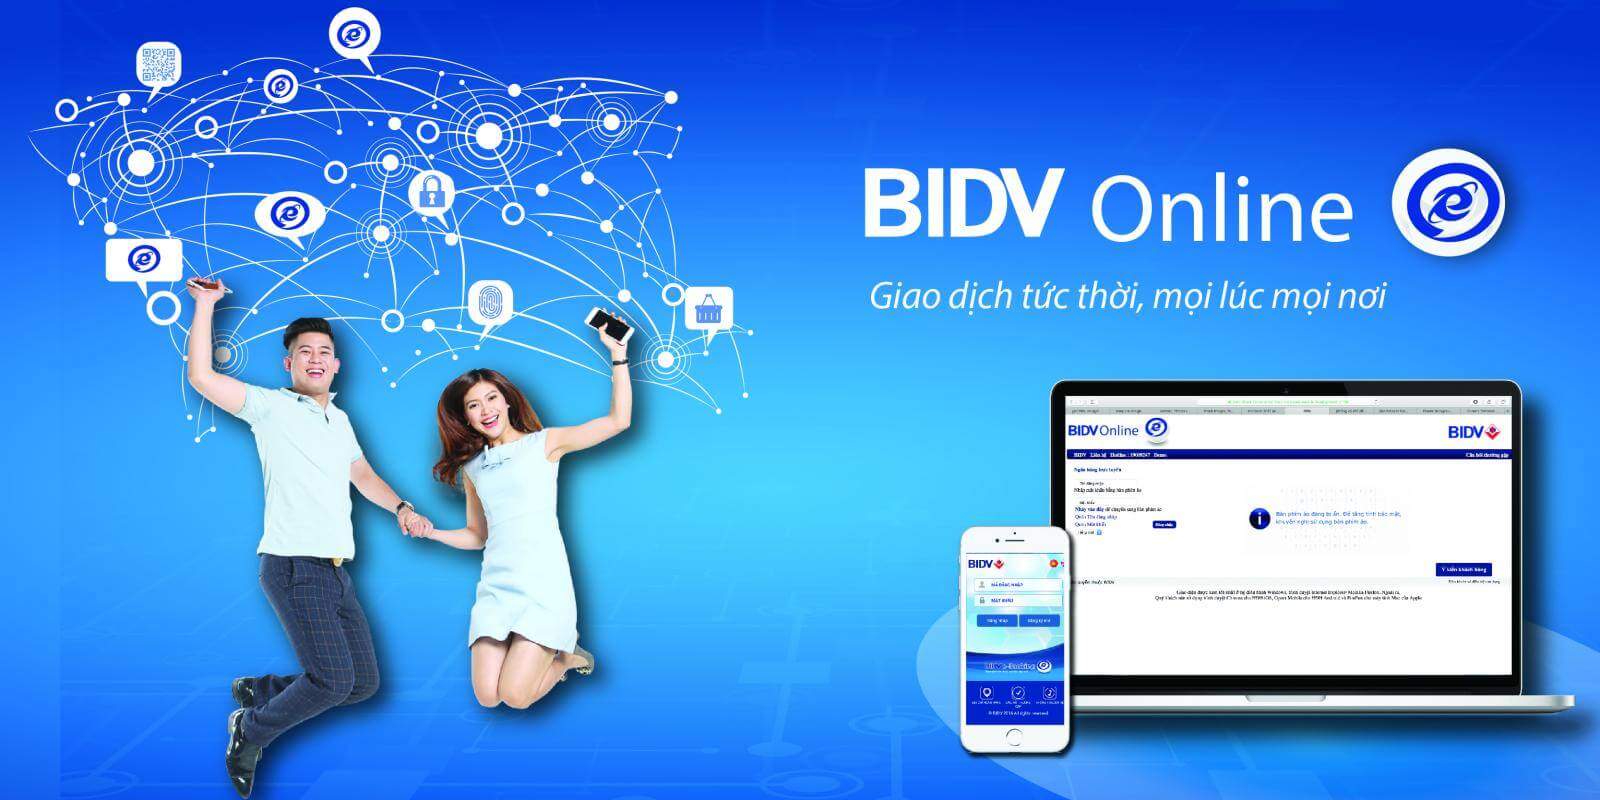 Dịch vụ BIDV Online